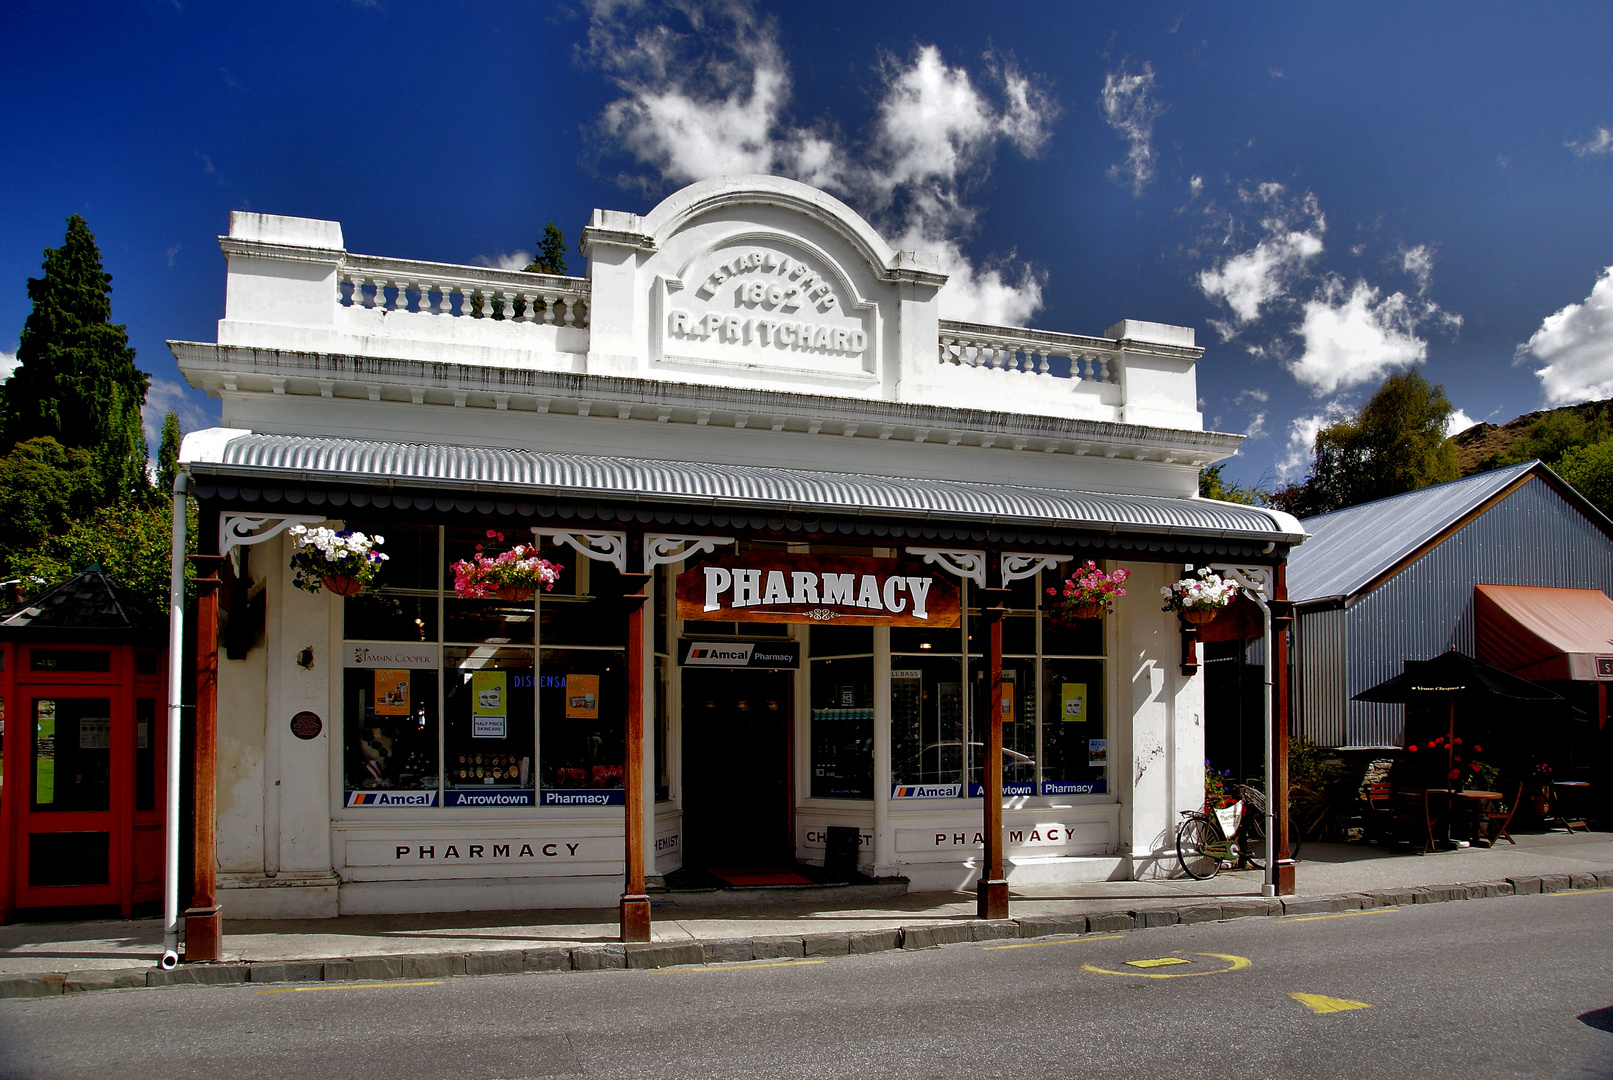 NZ Arrowtown Pharmacy